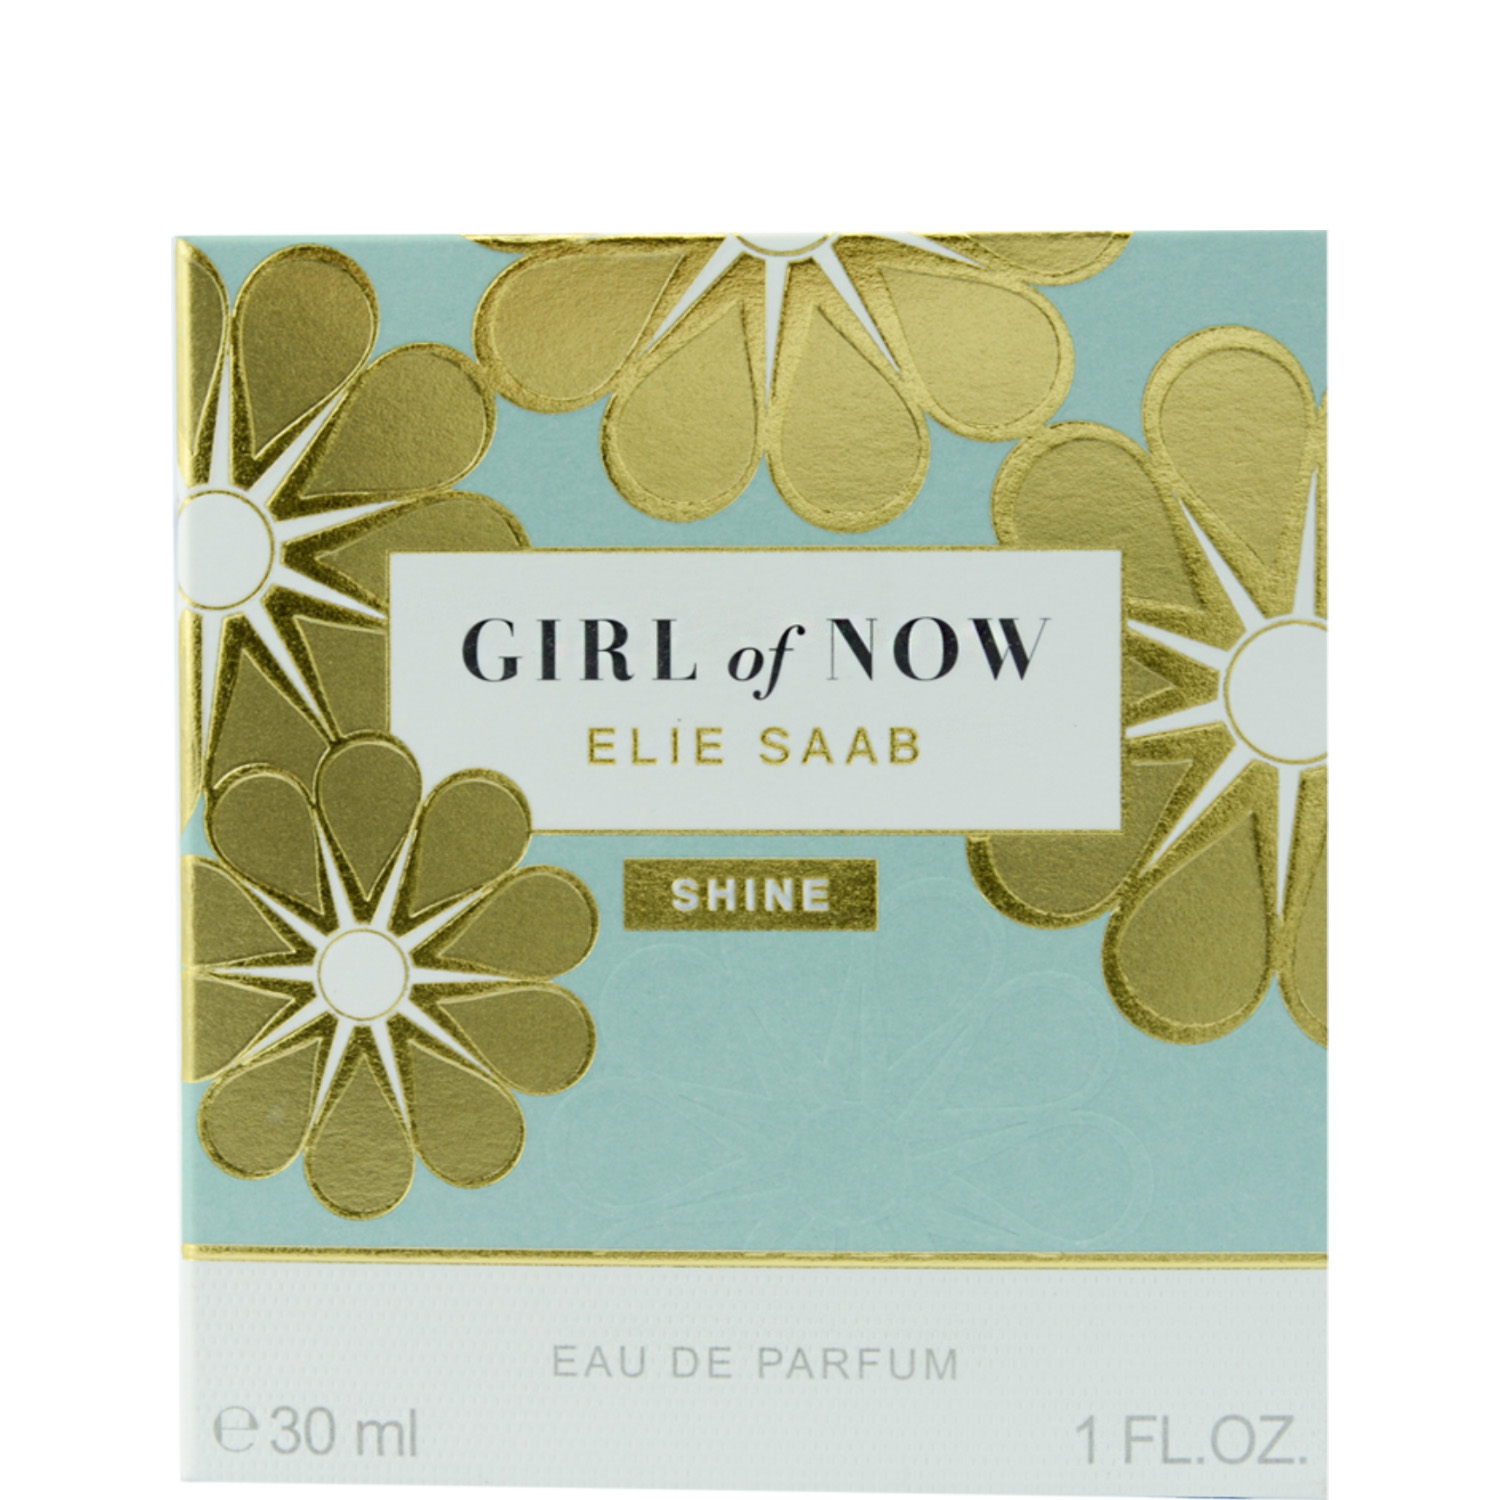 Elie Saab Girl Of Now Shine Eau de Parfum 30ml